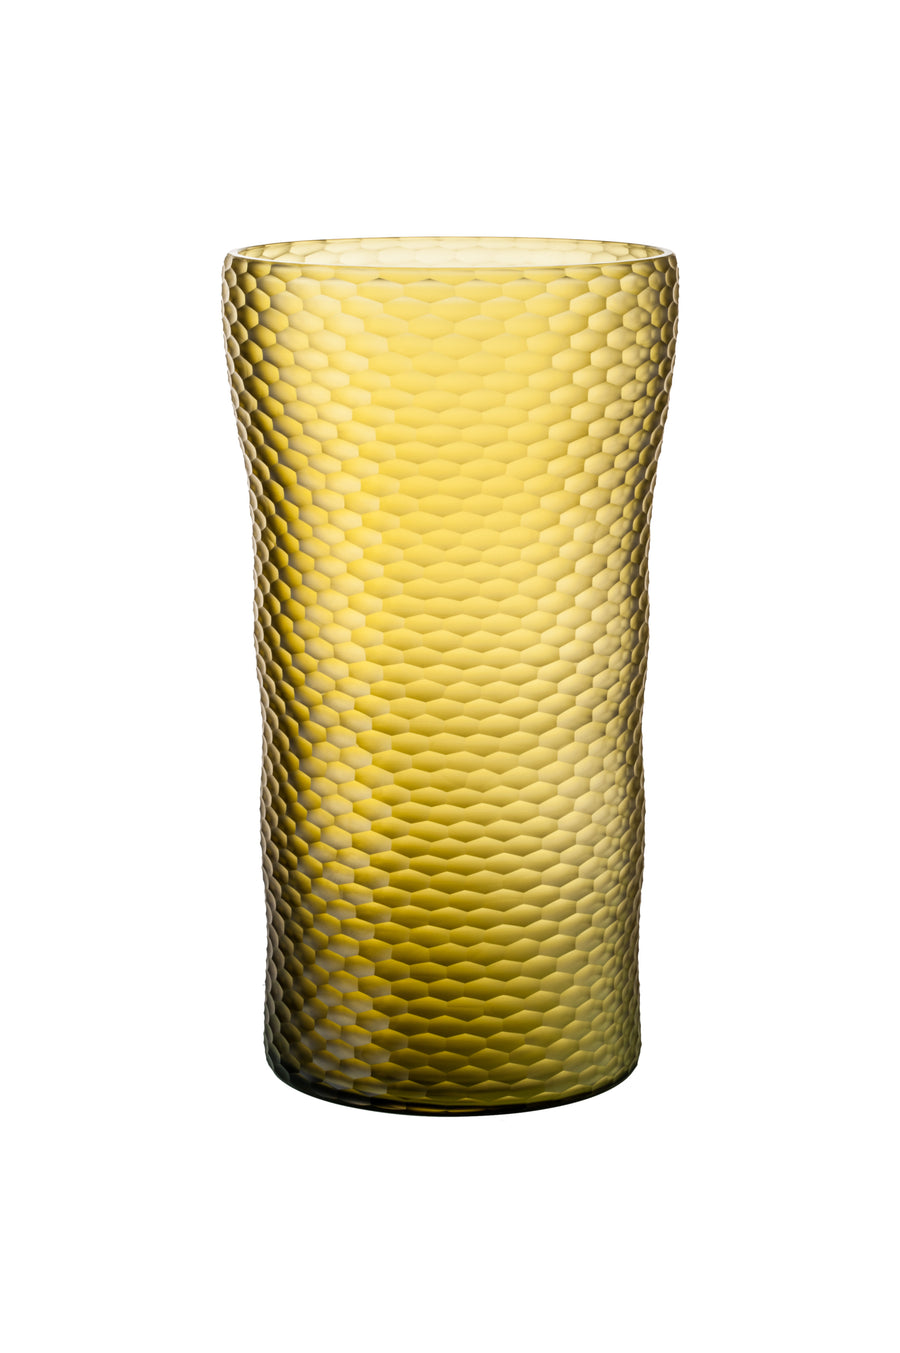 BATTUTO A NIDO D’APE Glass Vase by Carlo Scarpa for Venini - DUPLEX DESIGN